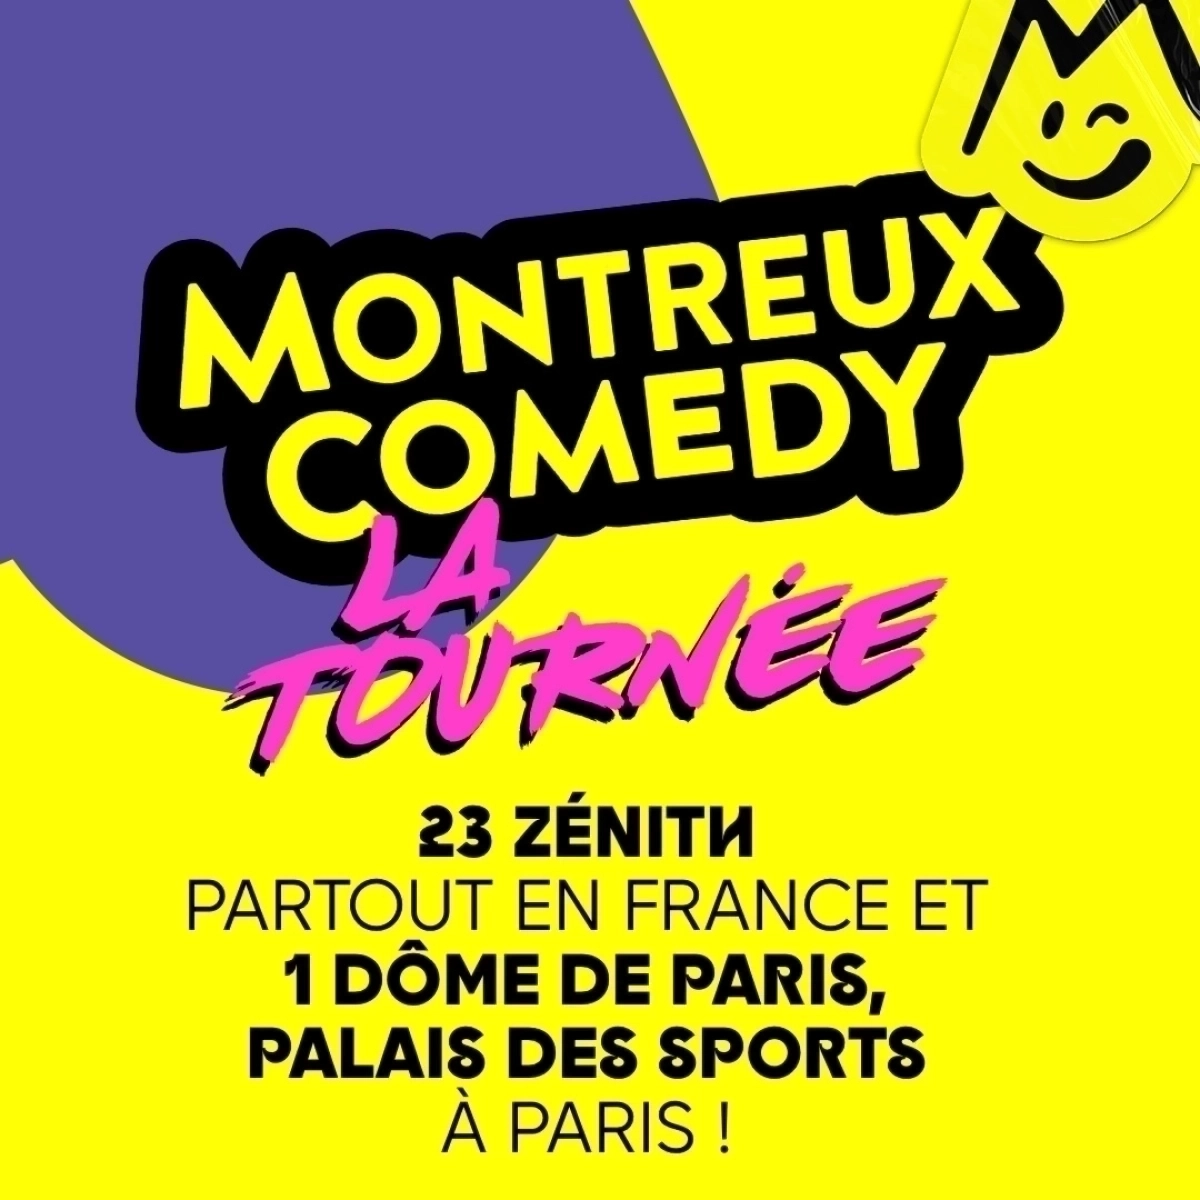 Montreux Comedy - La Tournée al Zenith d'Auvergne Tickets